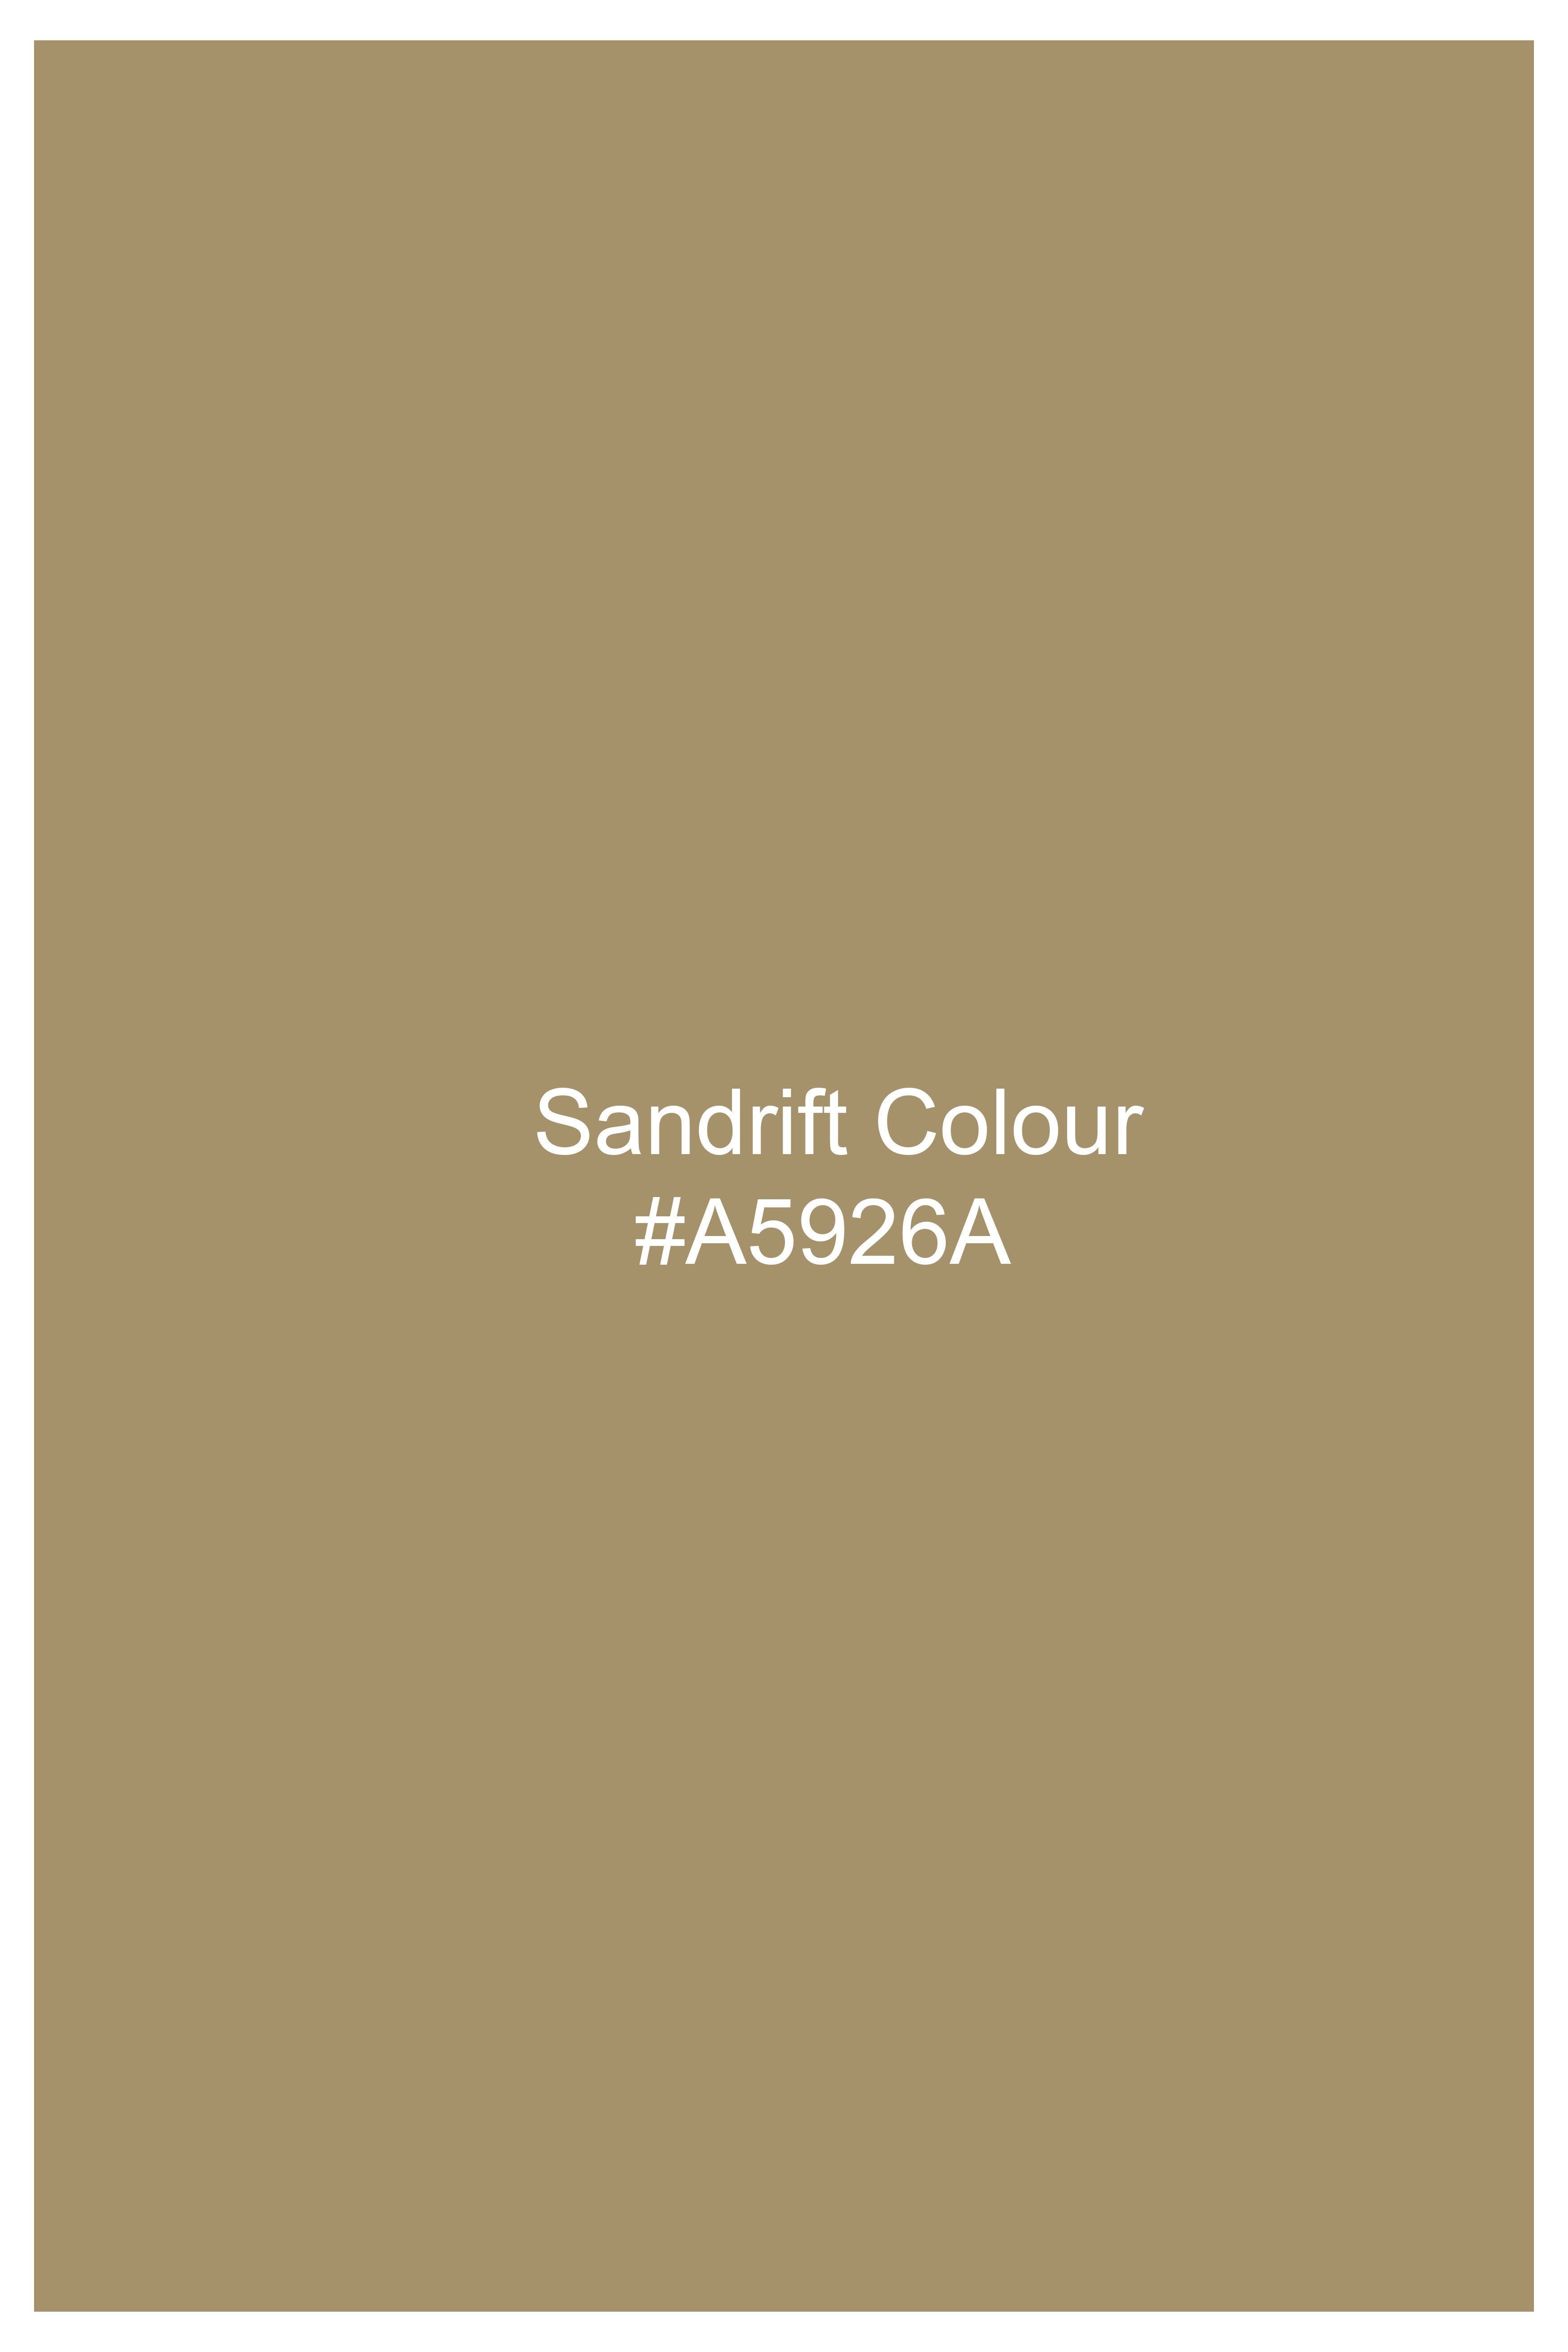 Sandrift Brown Wool Rich Bandhgala Designer Suit ST2858-BG-D356-36, ST2858-BG-D356-38, ST2858-BG-D356-40, ST2858-BG-D356-42, ST2858-BG-D356-44, ST2858-BG-D356-46, ST2858-BG-D356-48, ST2858-BG-D356-50, ST2858-BG-D356-52, ST2858-BG-D356-54, ST2858-BG-D356-56, ST2858-BG-D356-58, ST2858-BG-D356-60